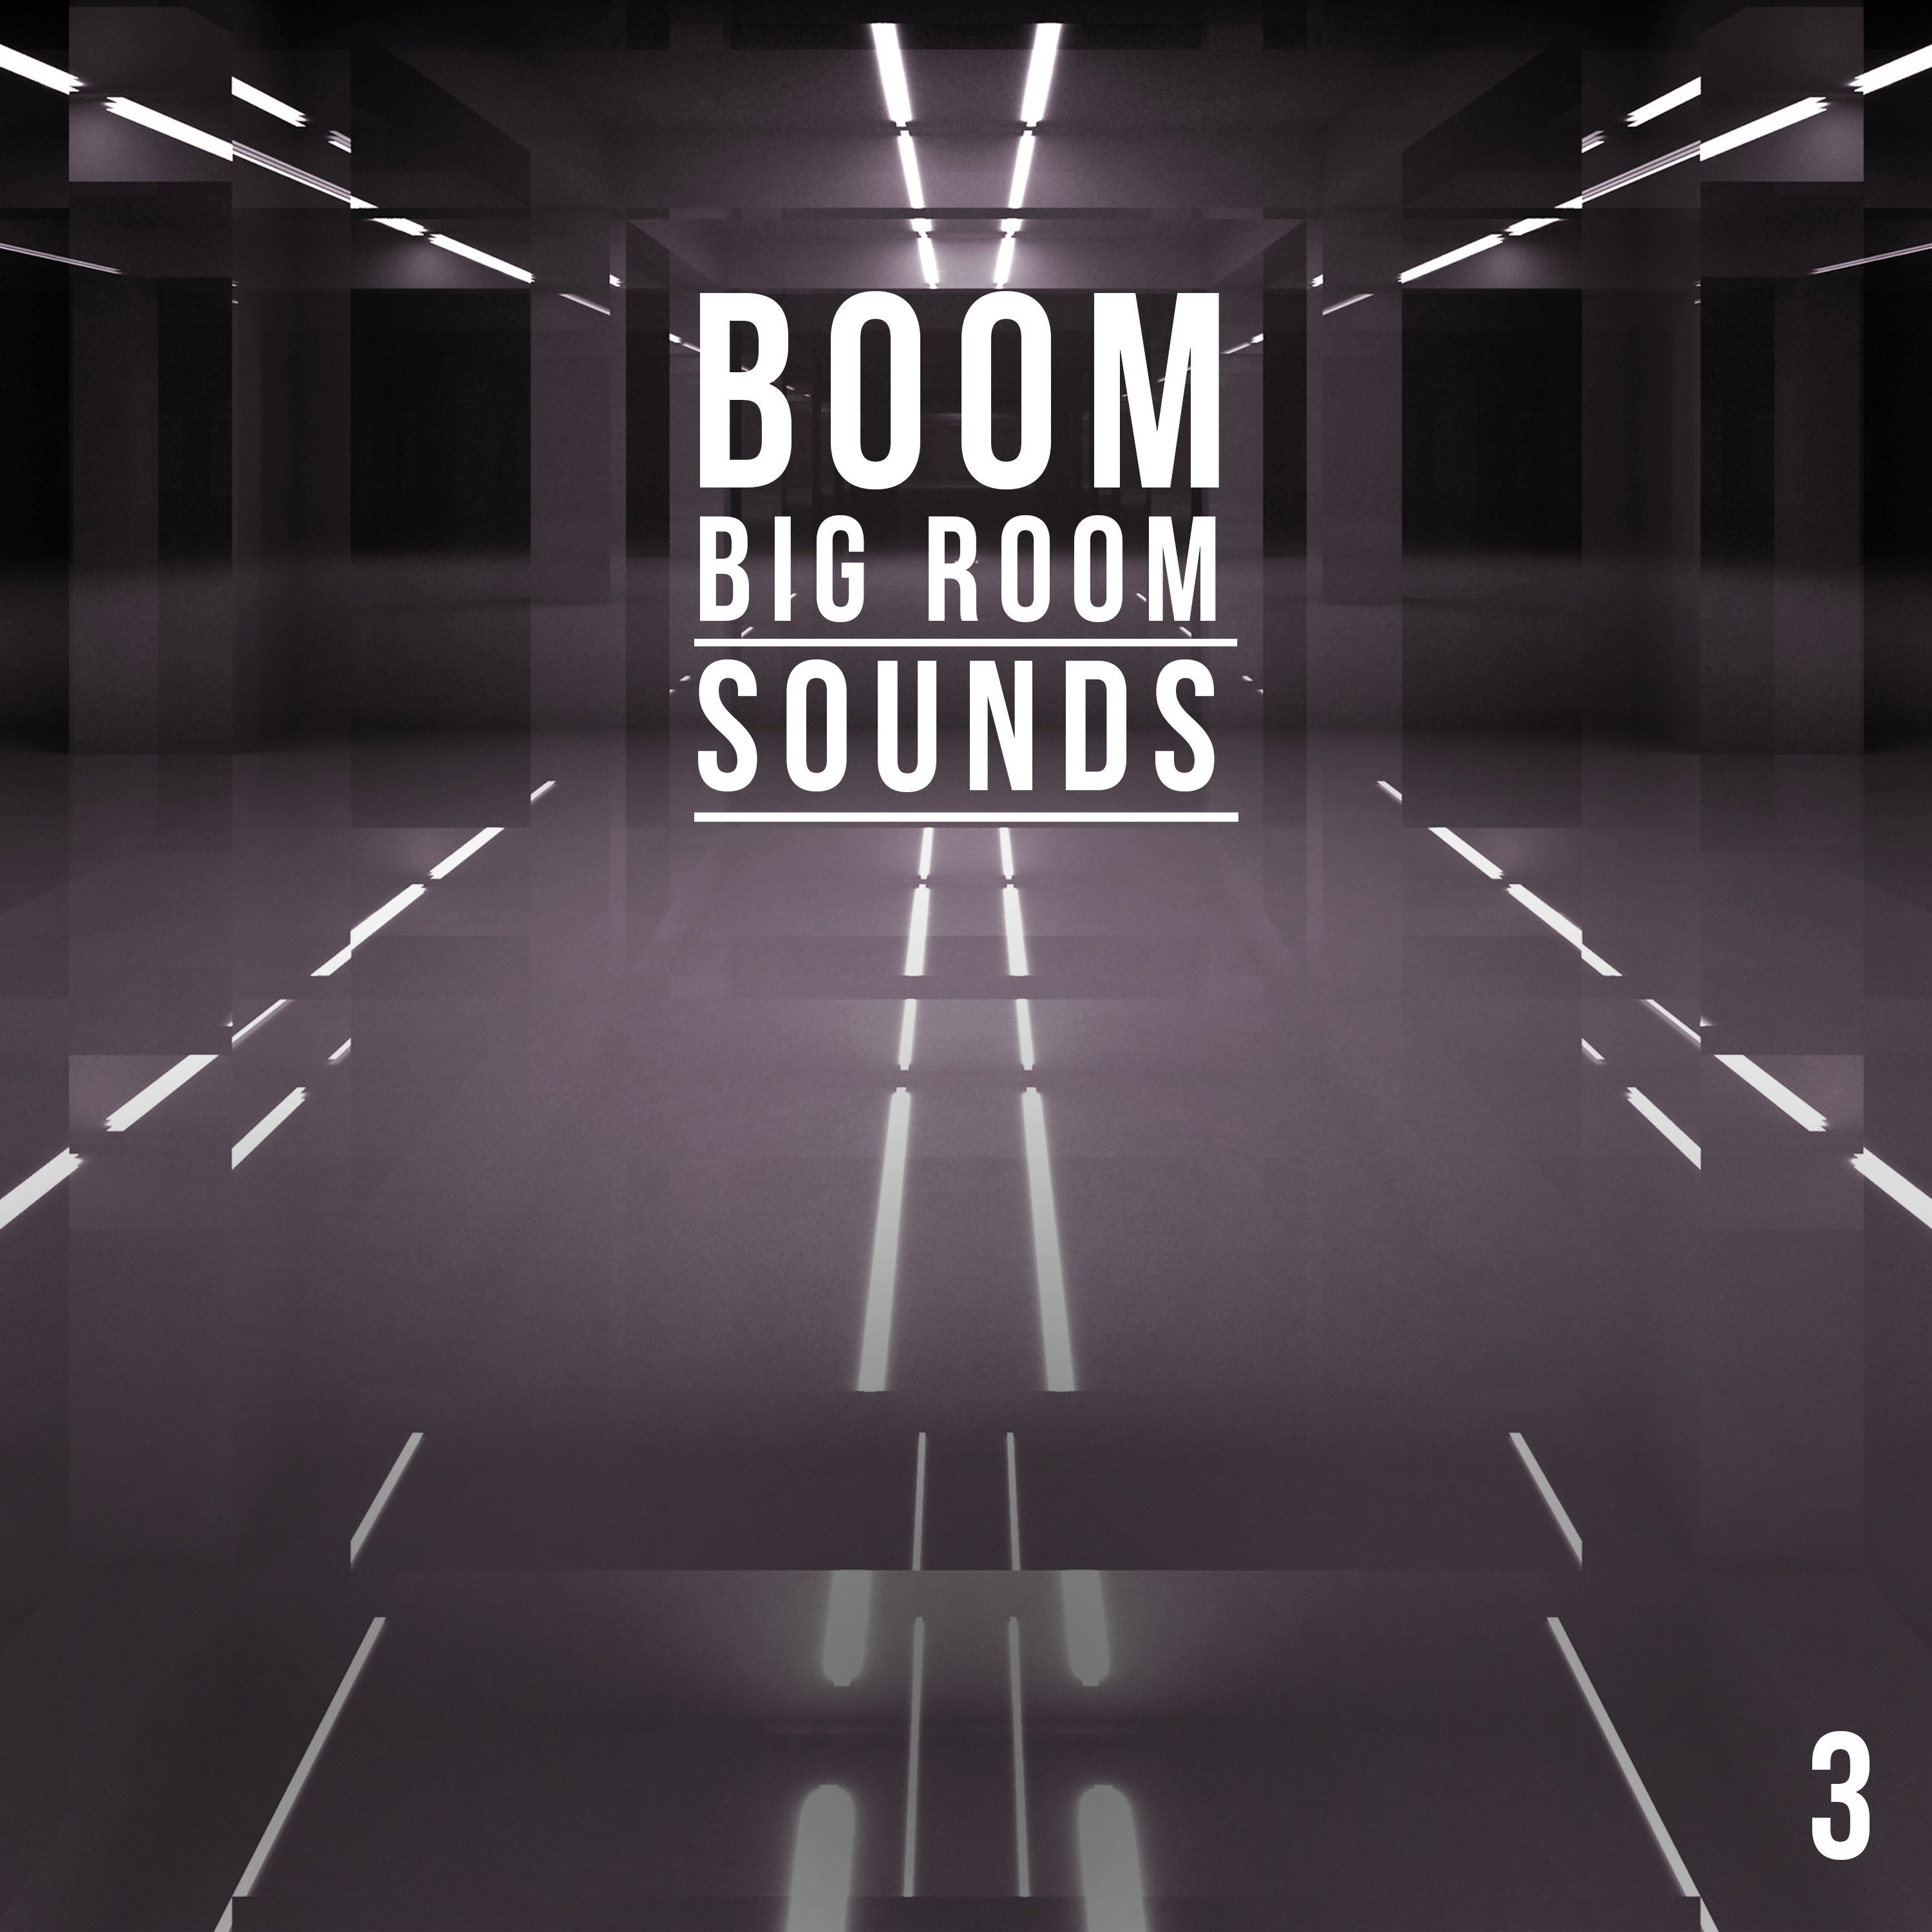 Boom, Vol. 3 - Big Room Sounds